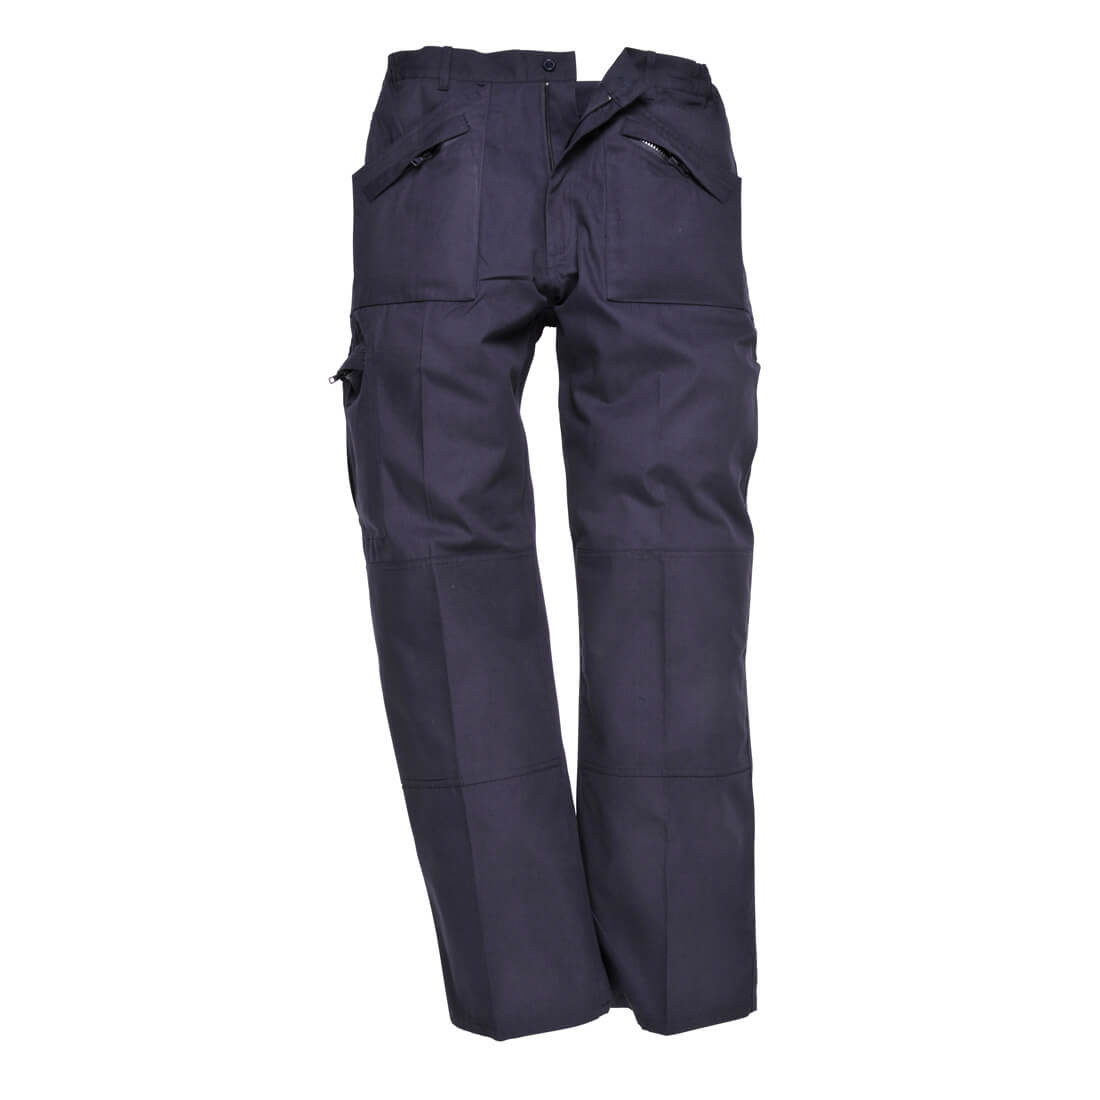 Pantaloni Action Clasici - Finisare Texpel - Imbracaminte de protectie